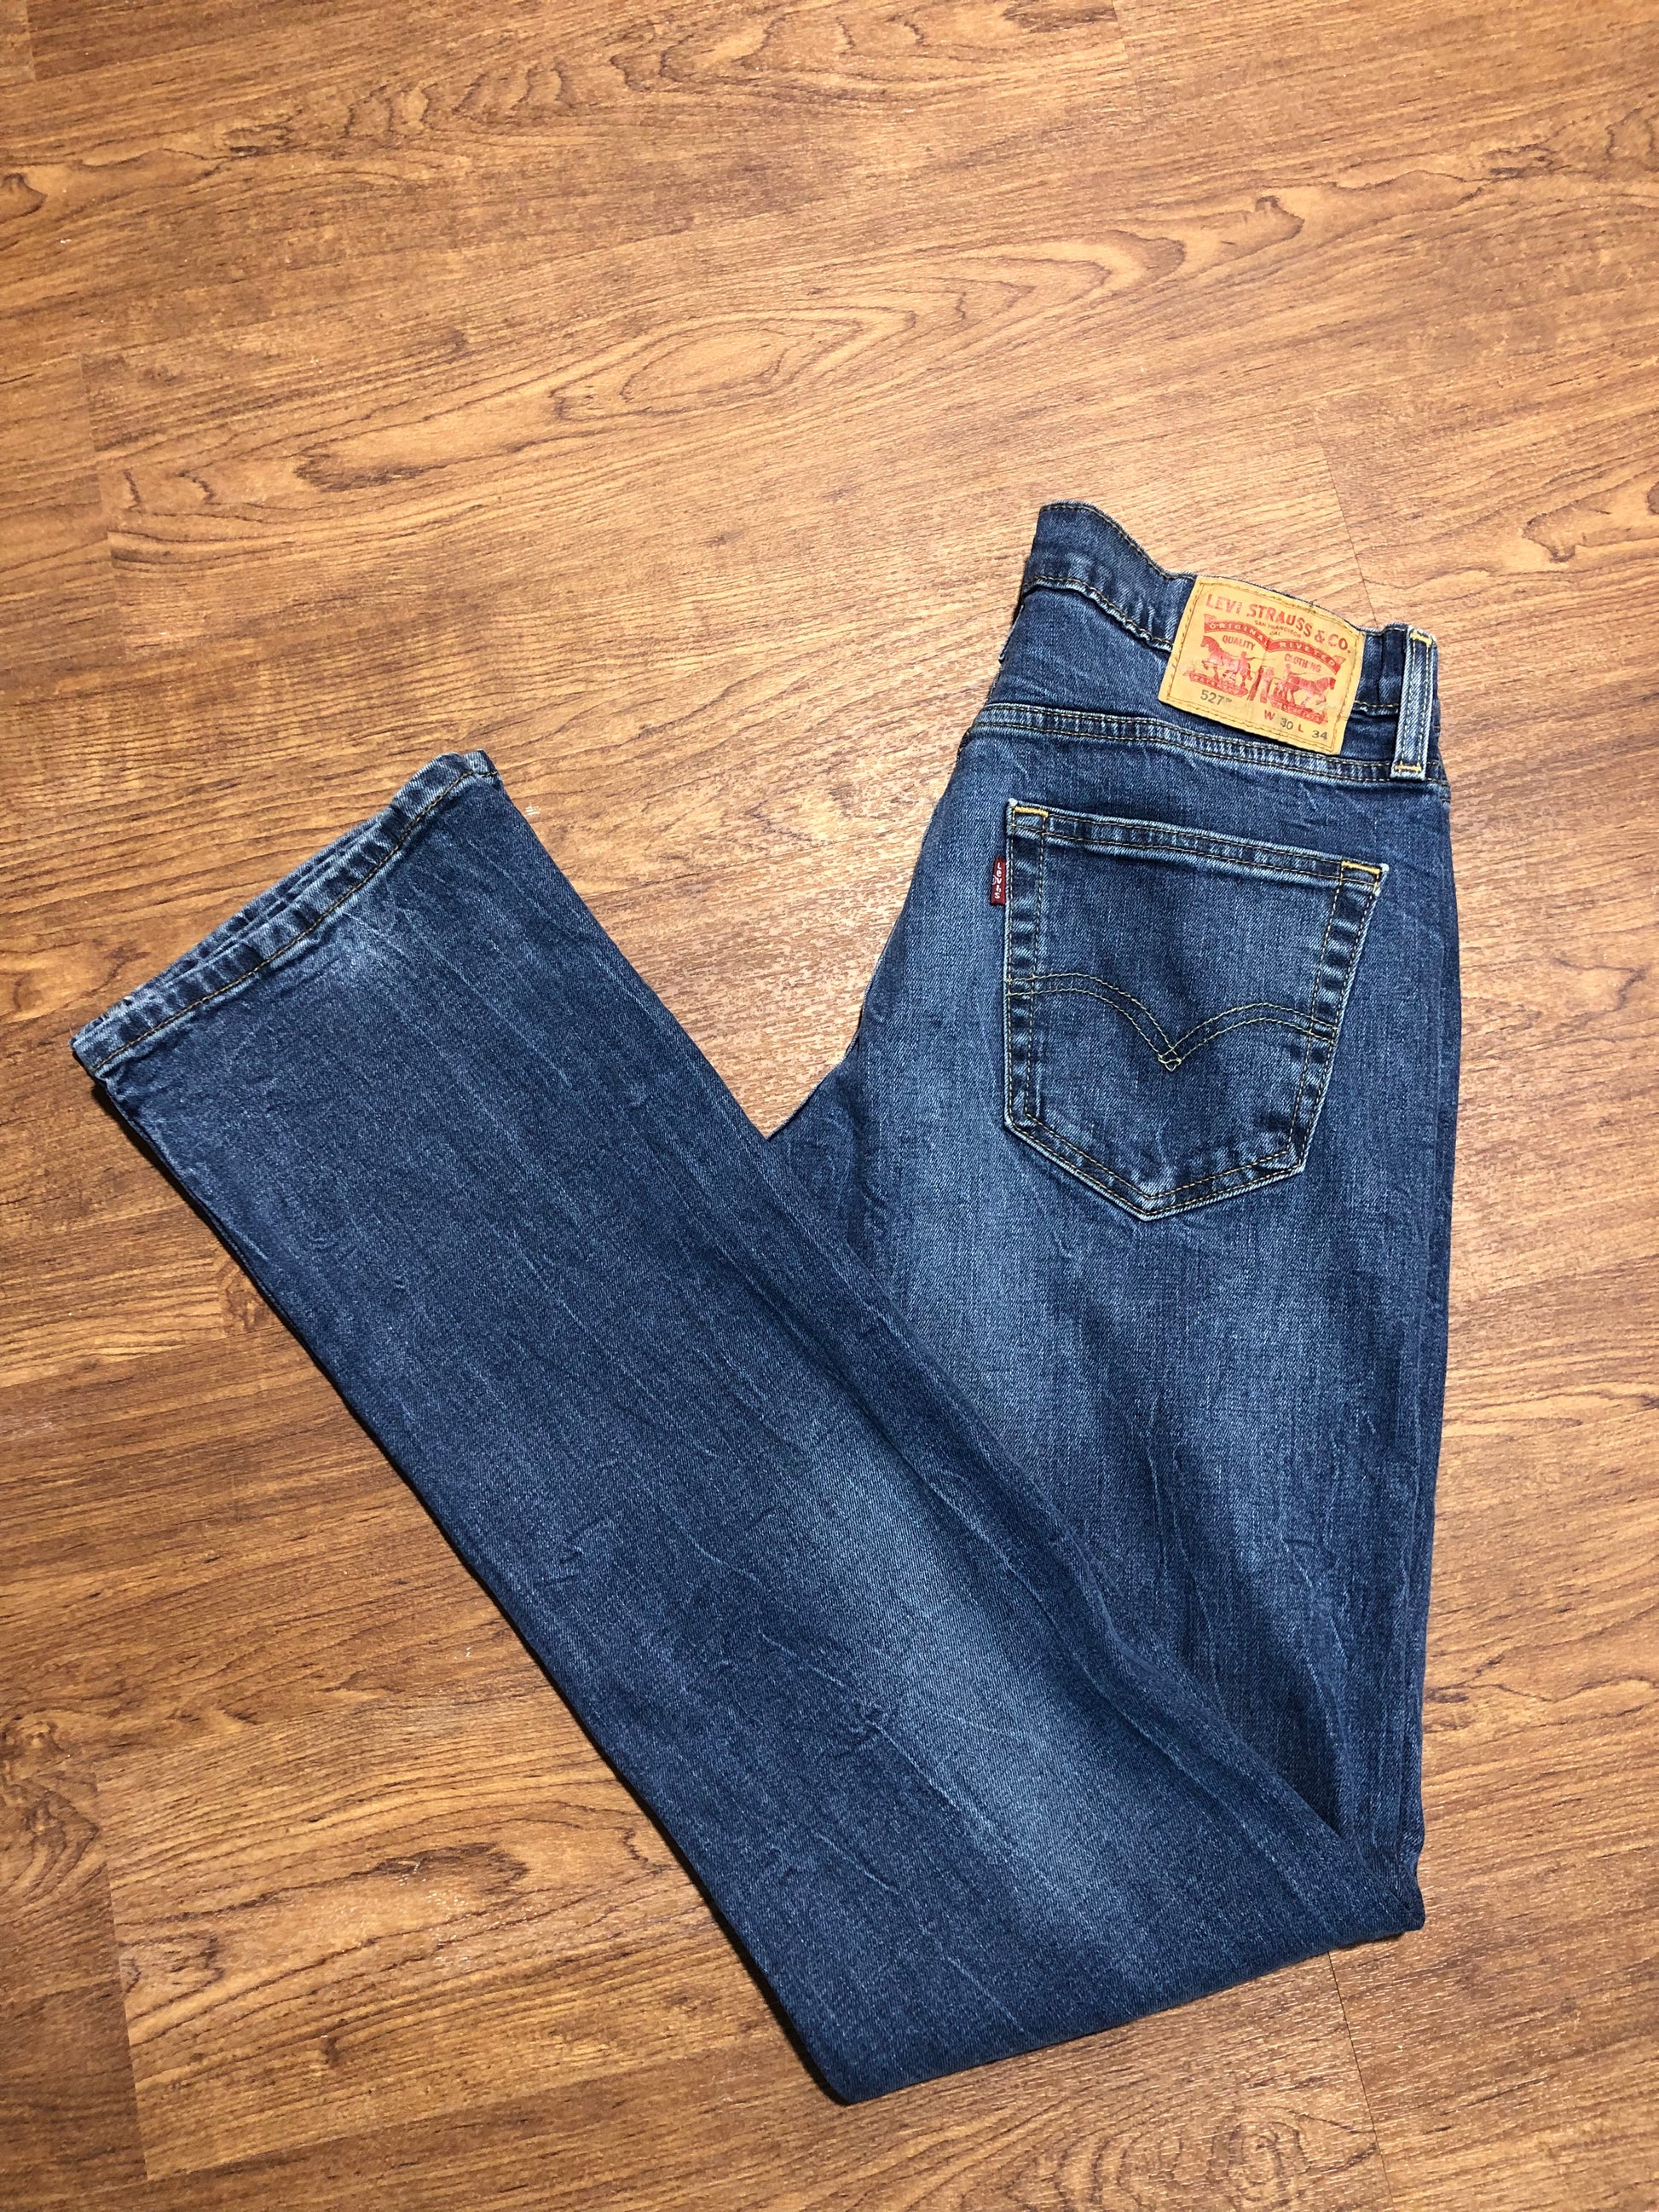 LEVI'S 527 blue jeans W30 L34 – Kent Vintage Garms